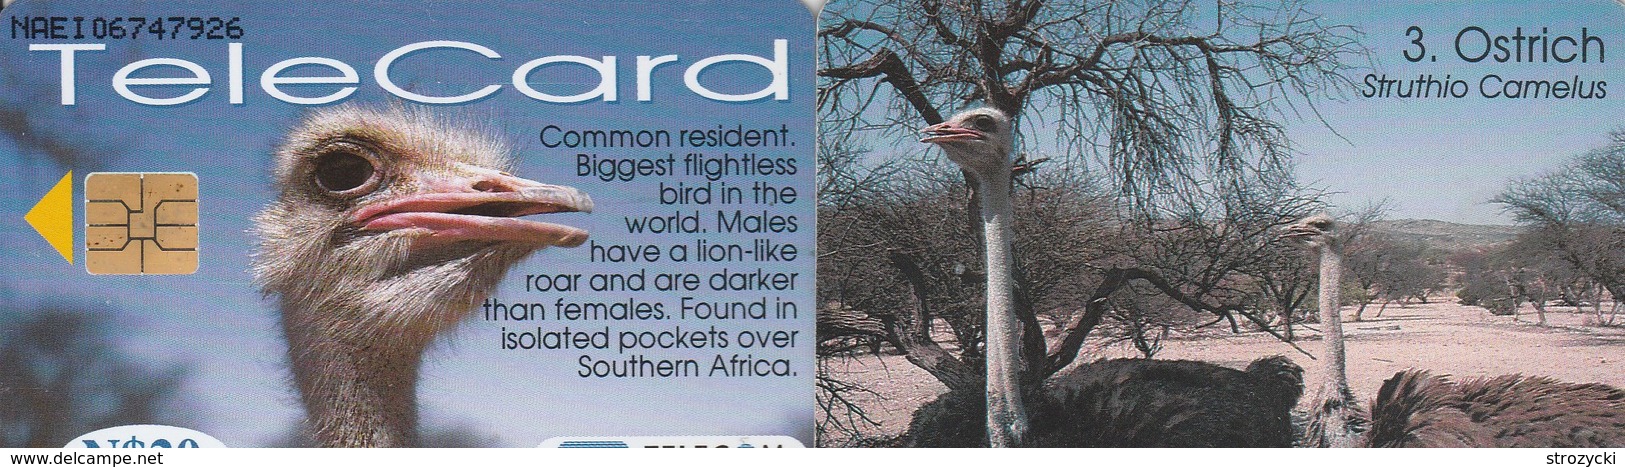 Namibia - Birds Of Namibia - Ostrich - Namibia